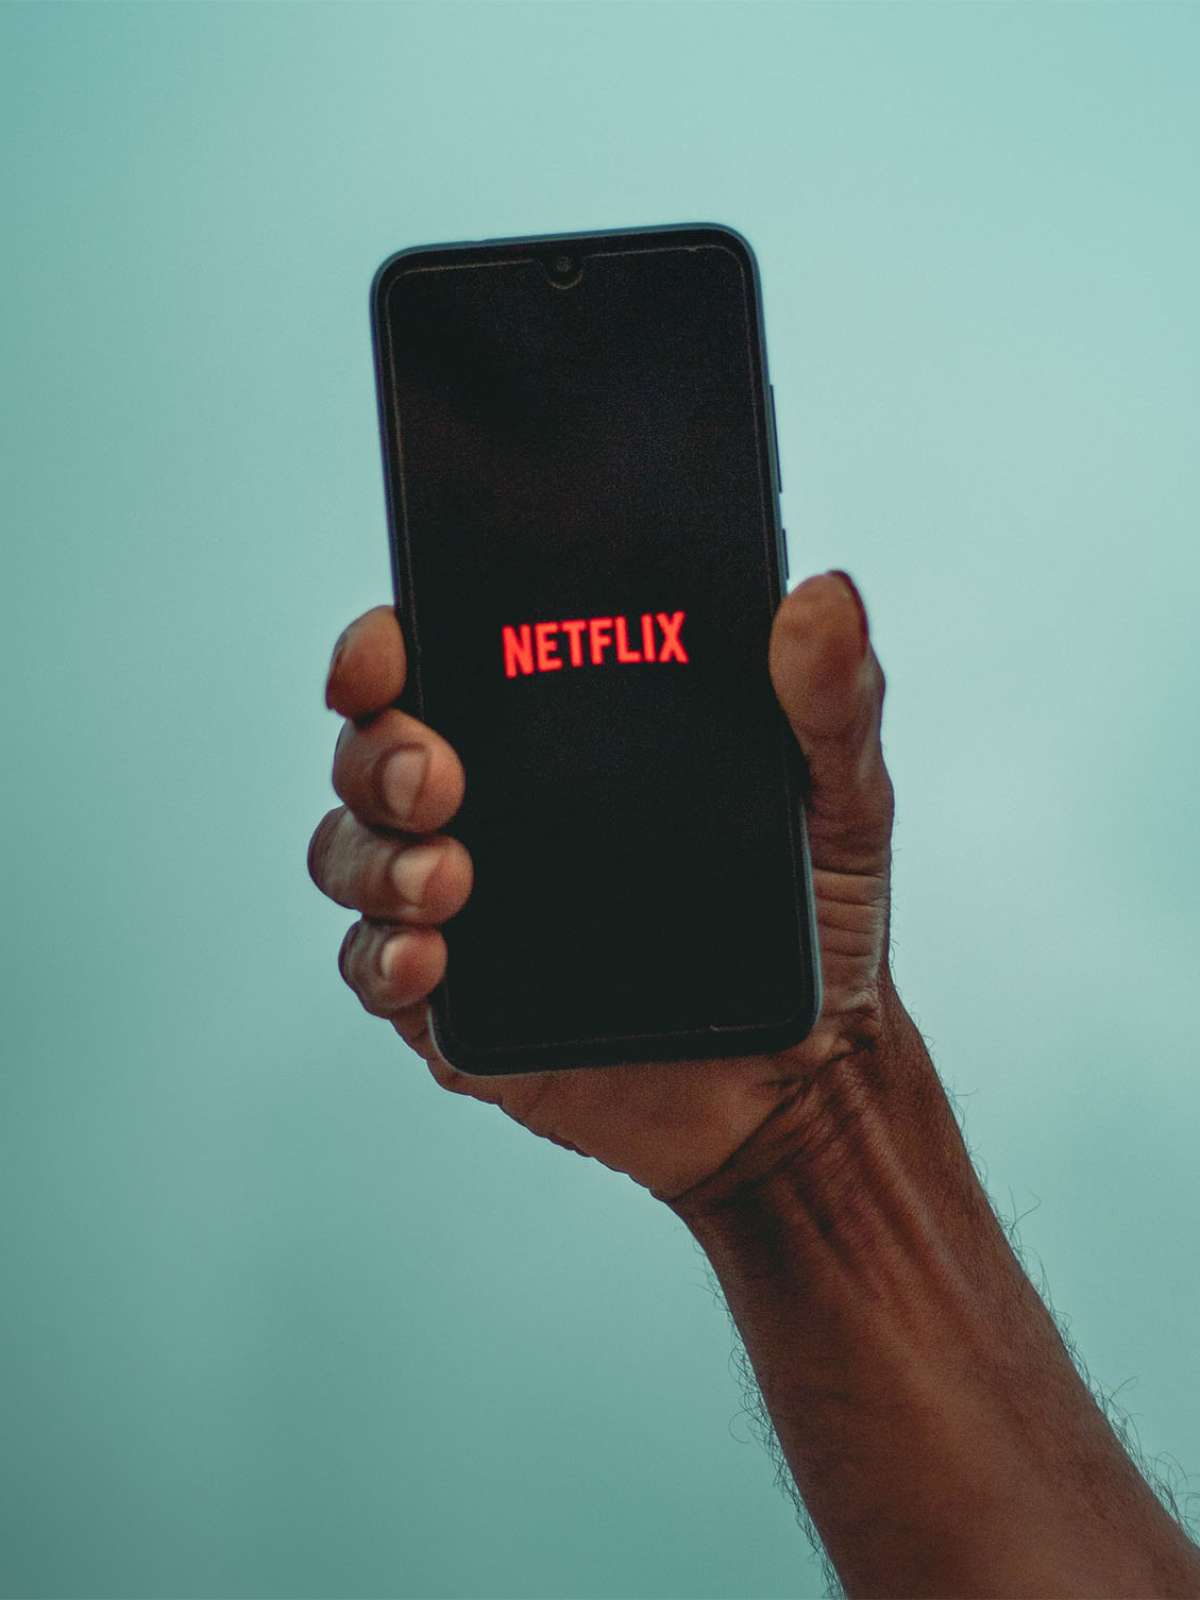 Netflix libera plano família no Brasil e anuncia chegada de 'Friends' em  junho